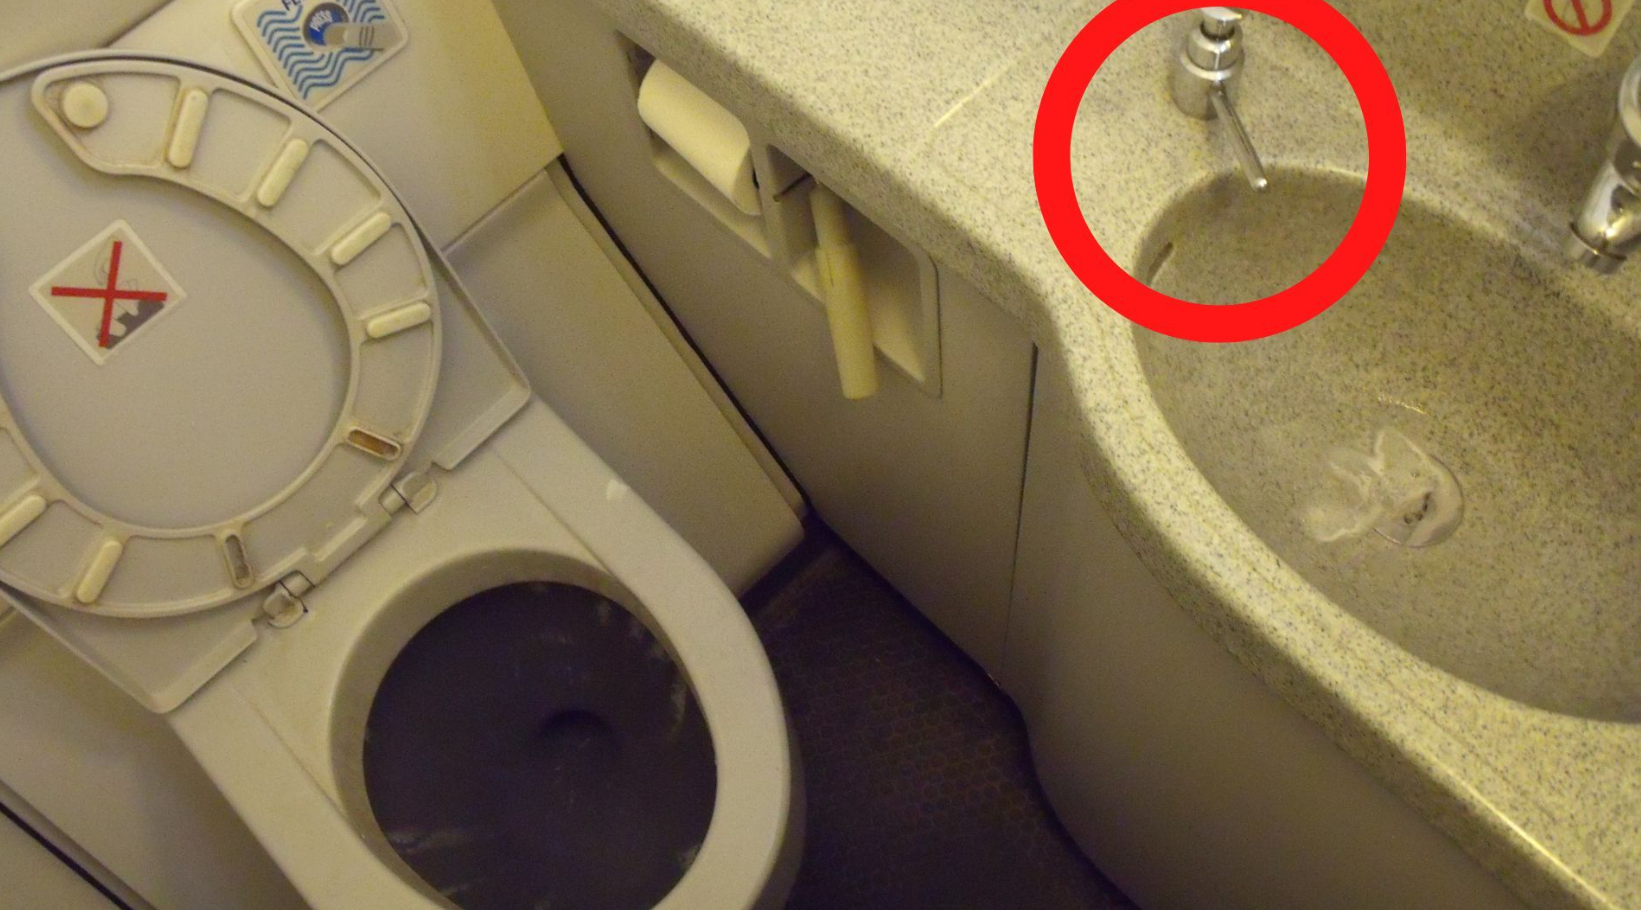 Cựu tiếp viên kể bí mật động trời về toilet trên máy bay, tiết lộ thời điểm không thích hợp nhất để dùng nhà vệ sinh - Ảnh 3.